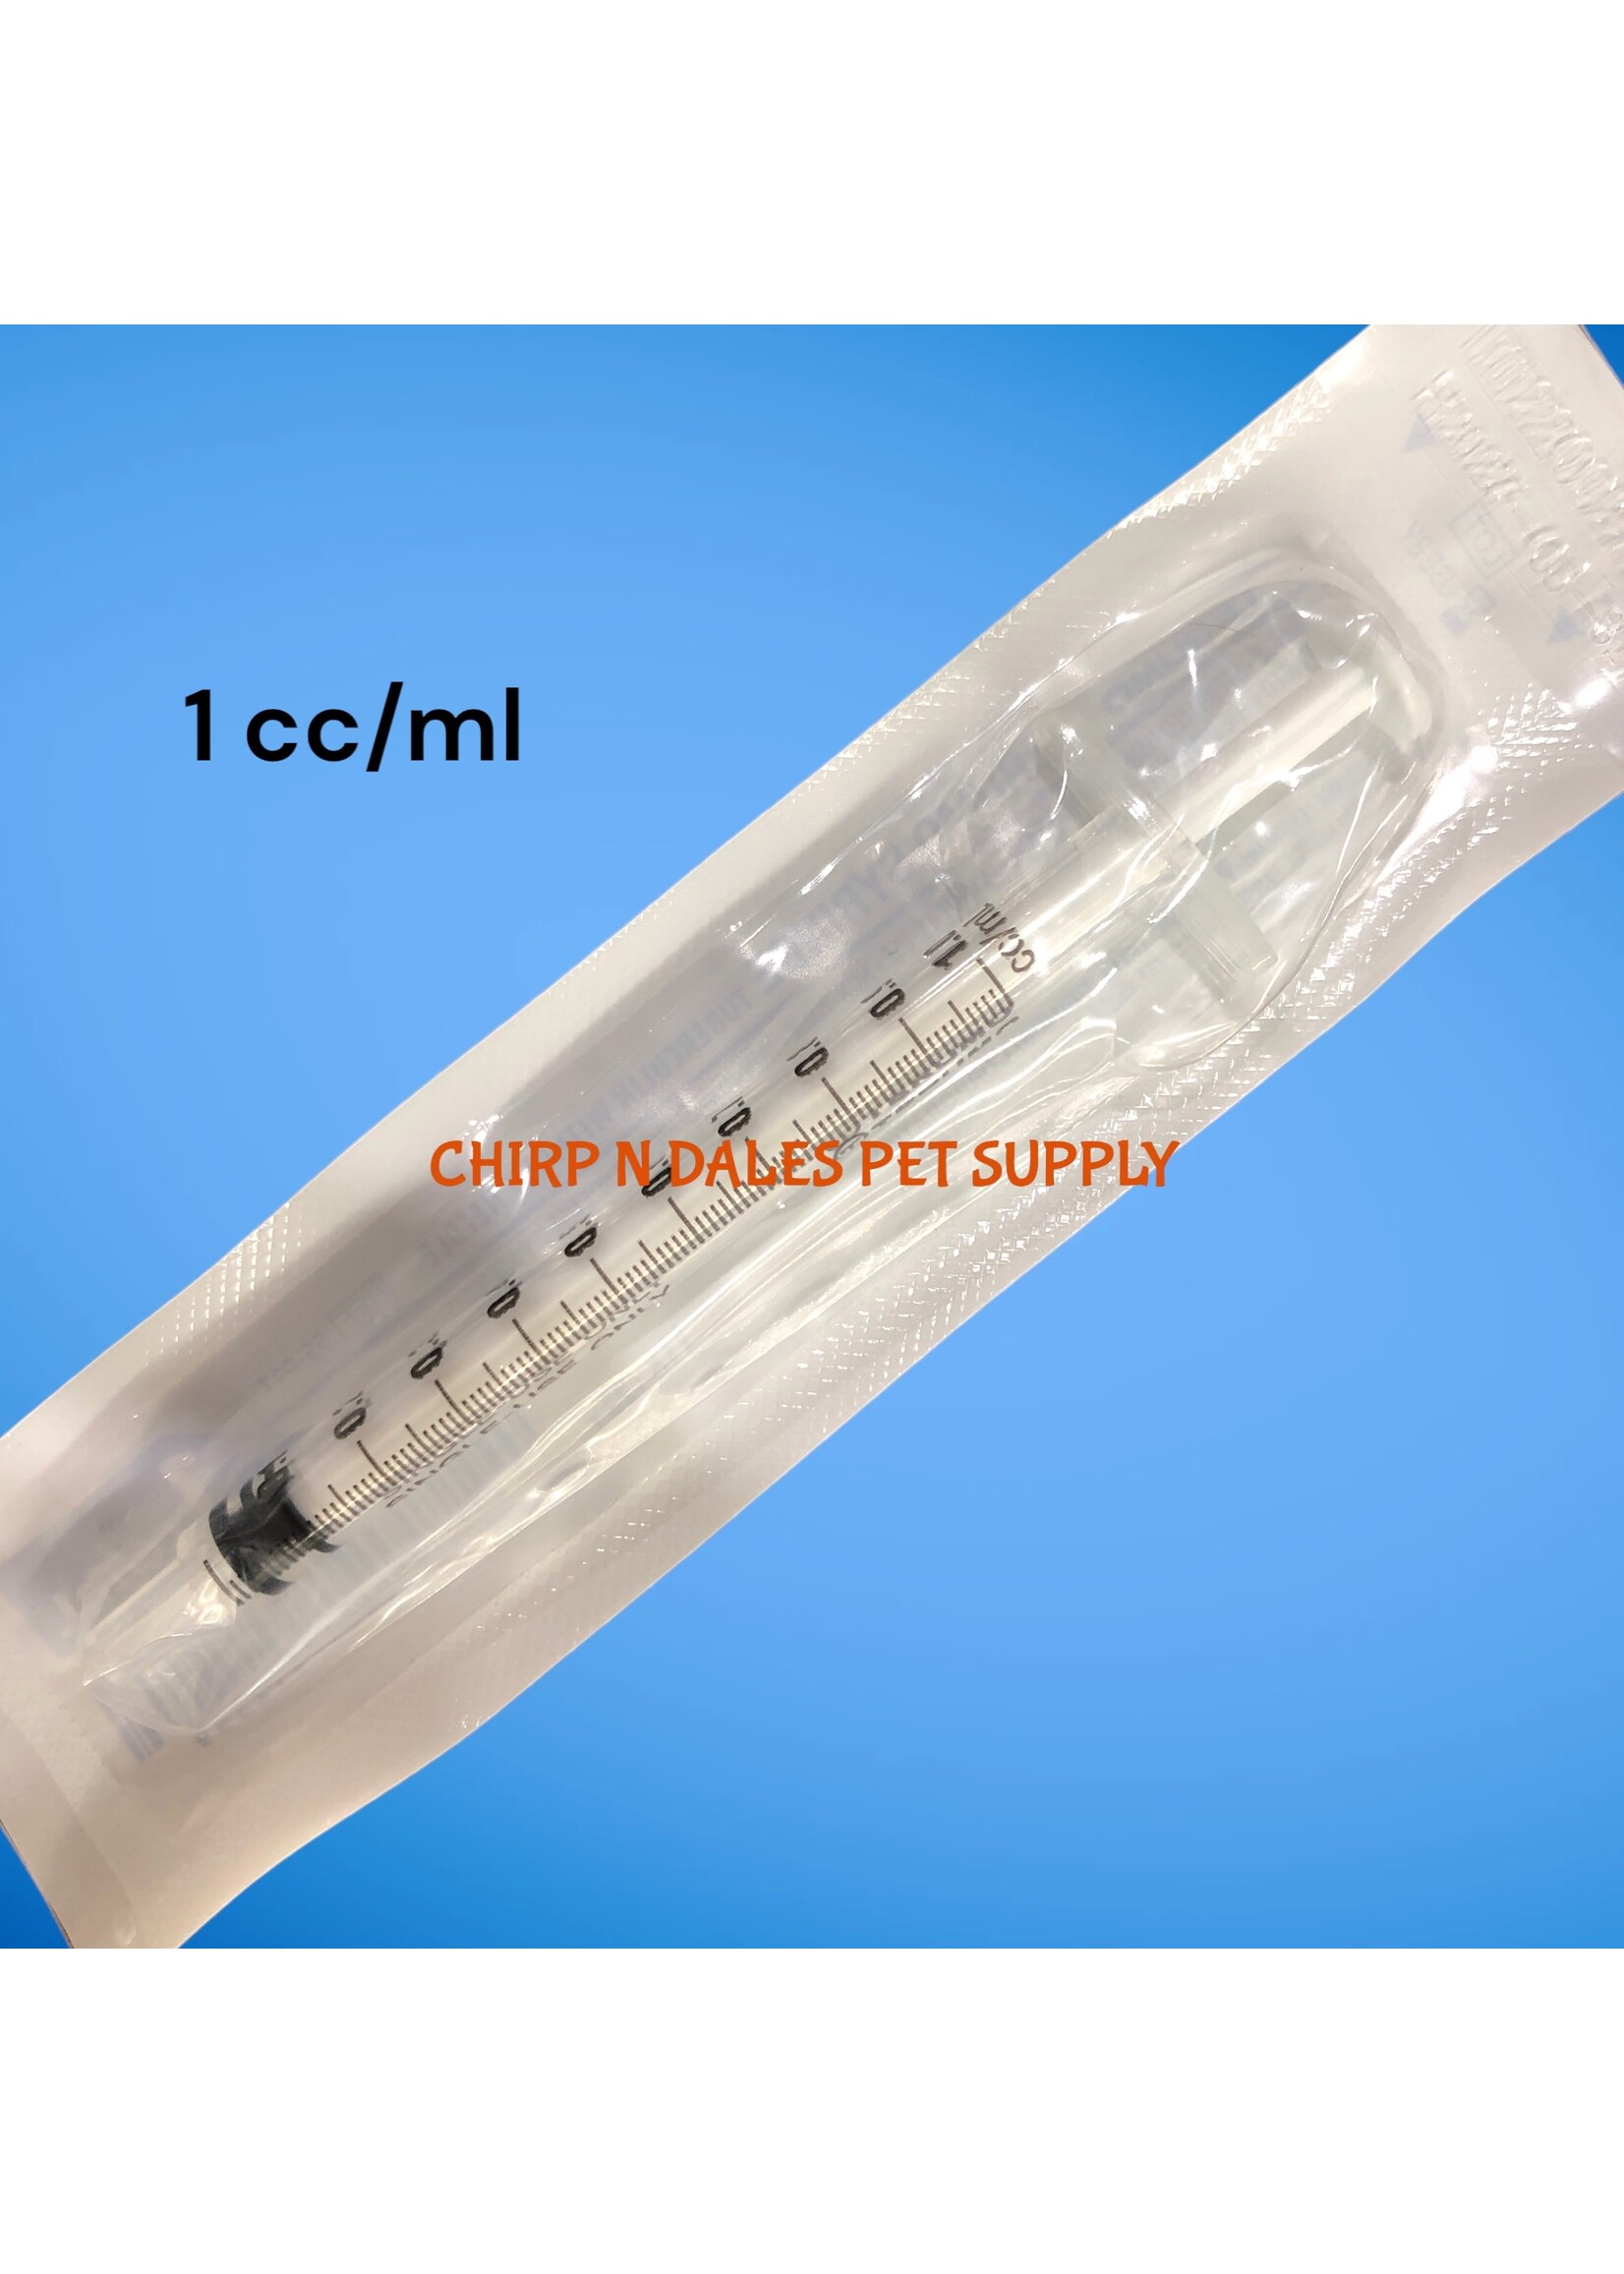 Syringe 1 cc/ml (1 unit)